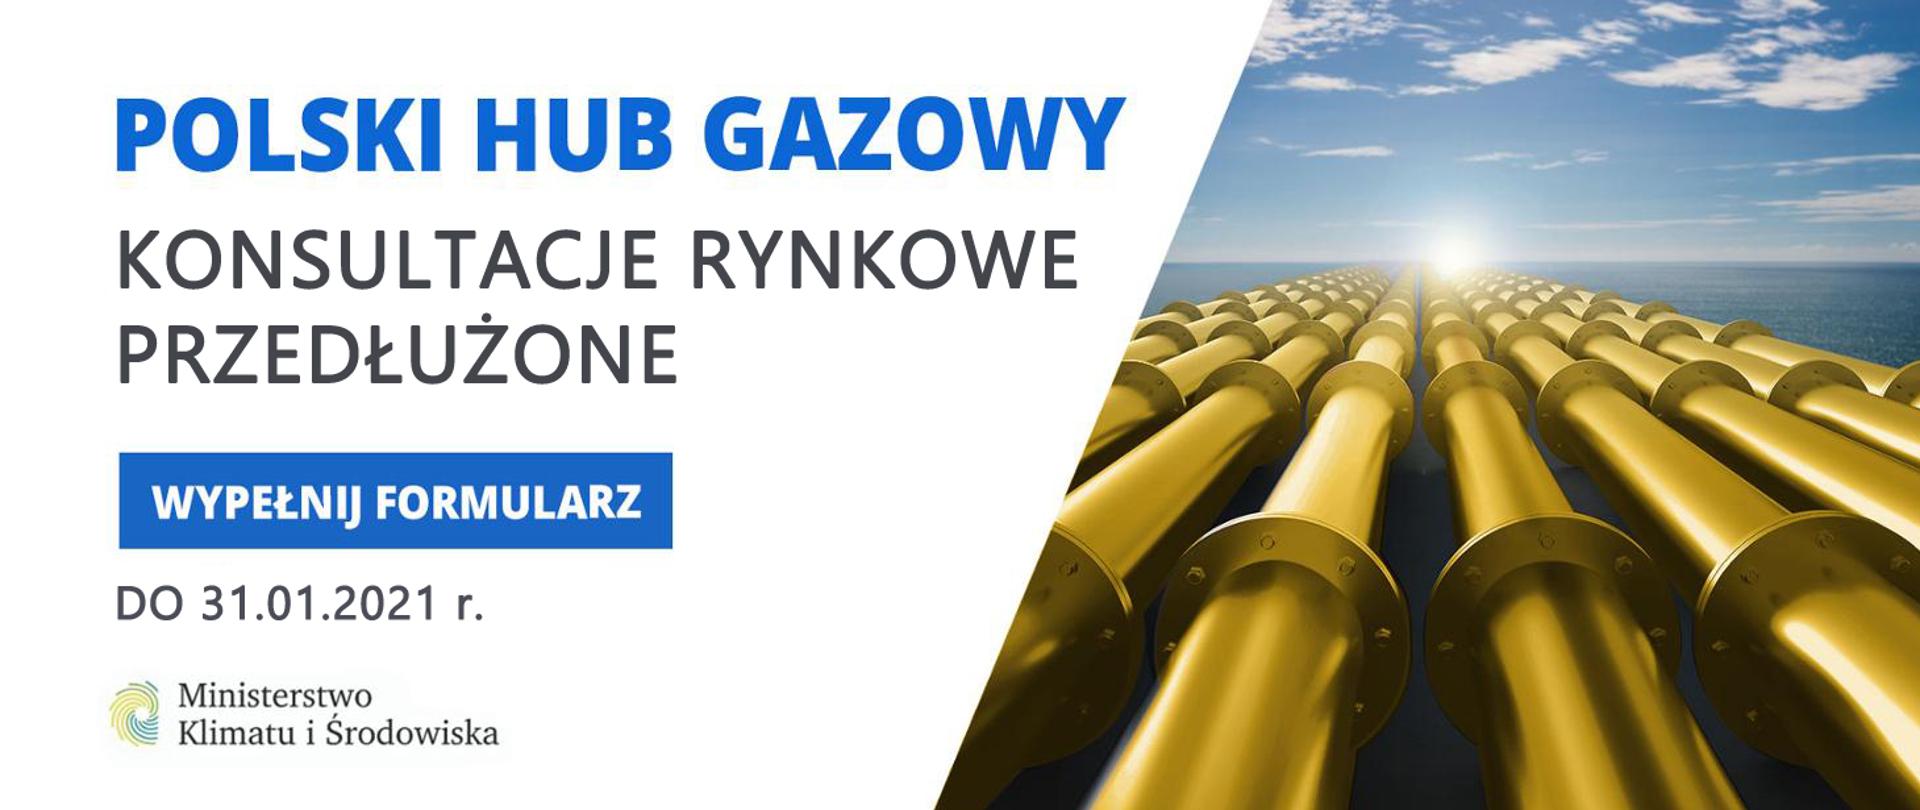 Polski hub gazowy, konsultacje rynkowe przedłużone